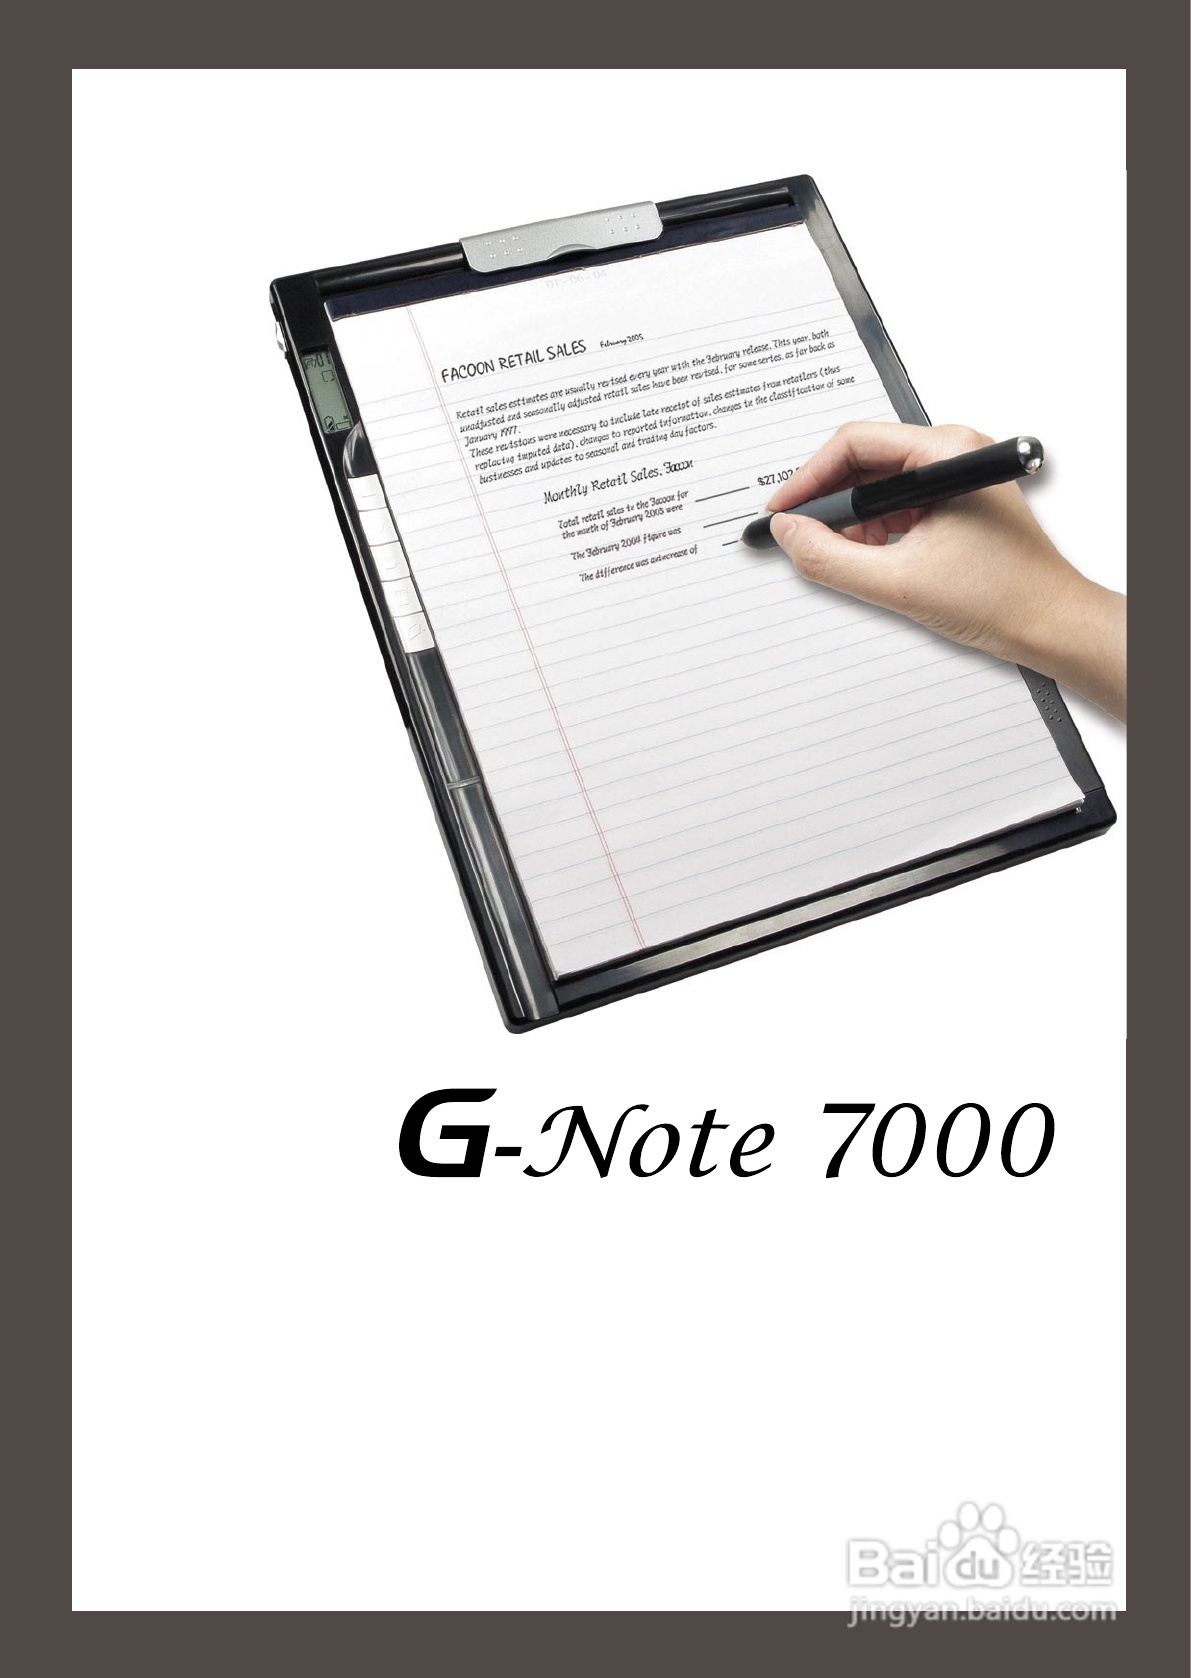 昆盈 GNote 7000型笔记本电脑使用说明书:[1]（昆盈企业股份有限公司）